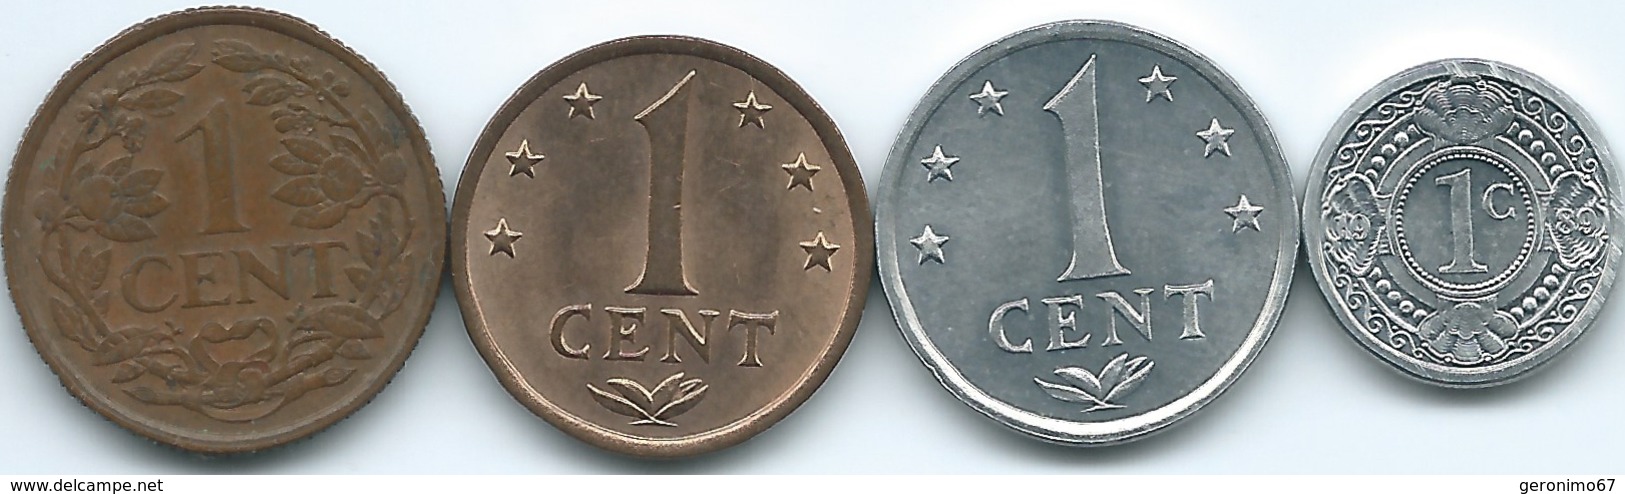 Netherlands Antilles - 1 Cent - 1959 (KM1) 1970 (KM8) 1984 (KM8a) & 1989 (KM32) - Niederländische Antillen